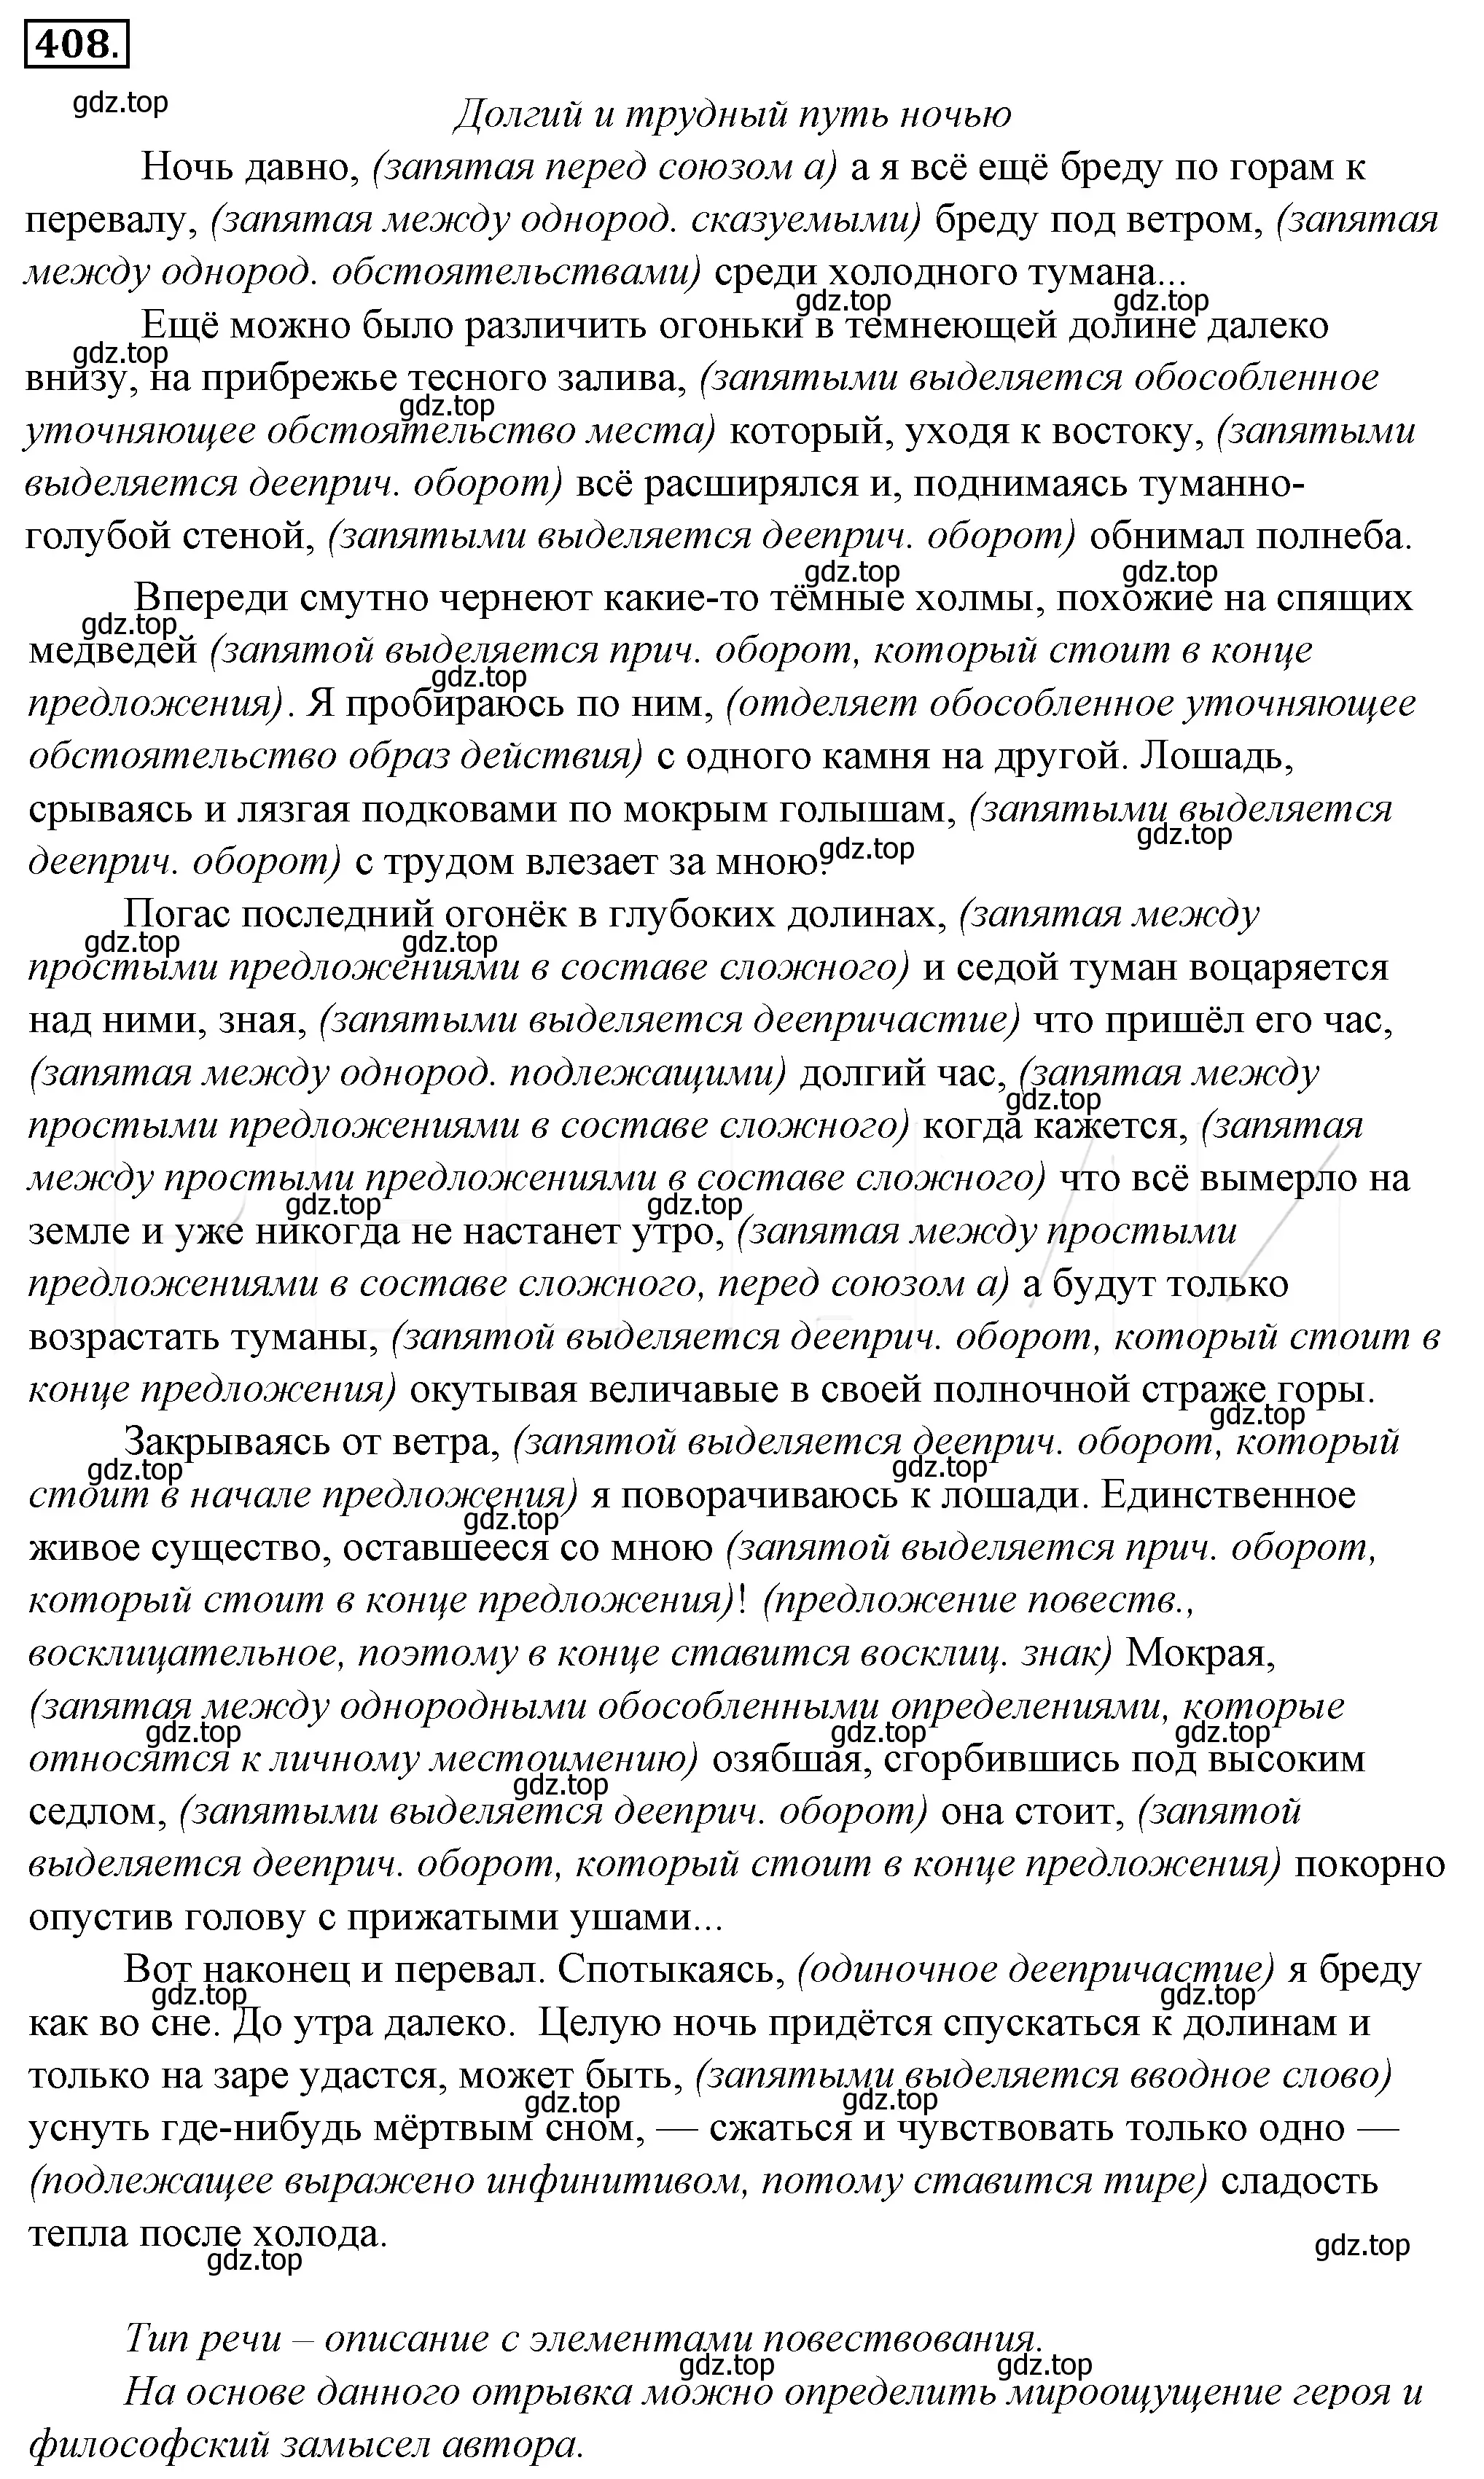 Решение 4. номер 73 (страница 98) гдз по русскому языку 10-11 класс Гольцова, Шамшин, учебник 2 часть